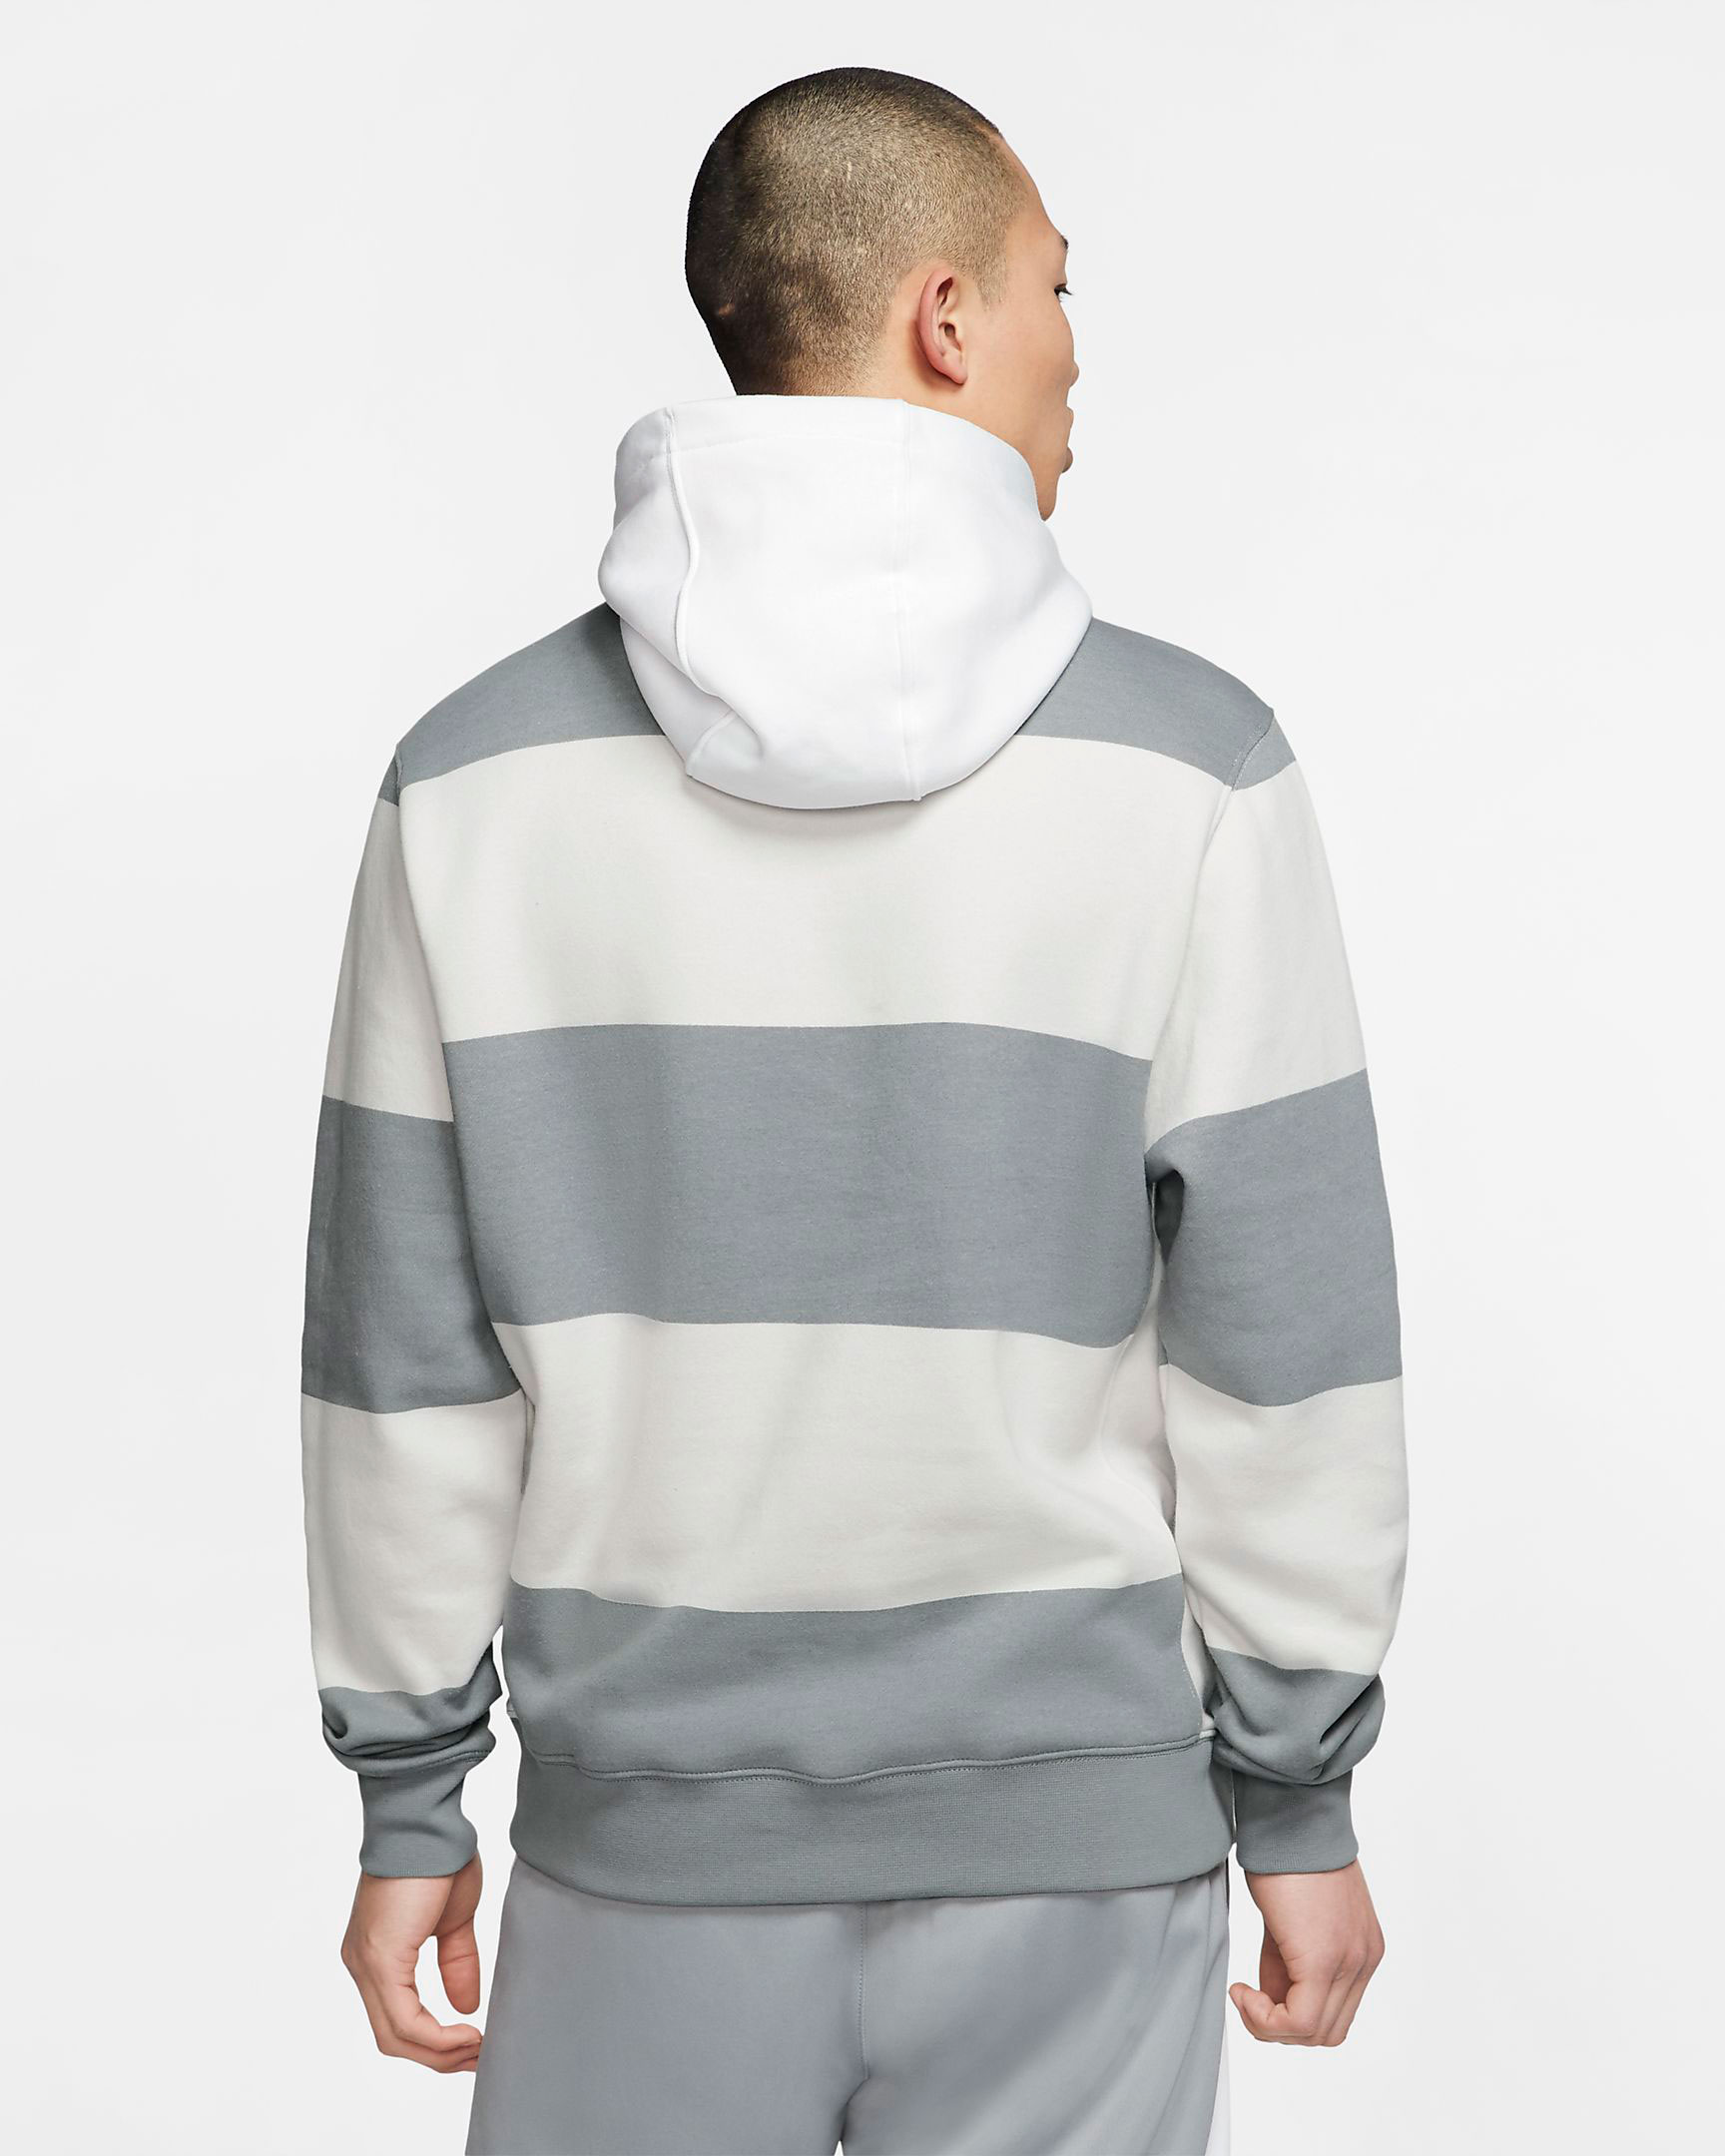 nike sportswear air max 90 club fleece hoodie sweatshirt